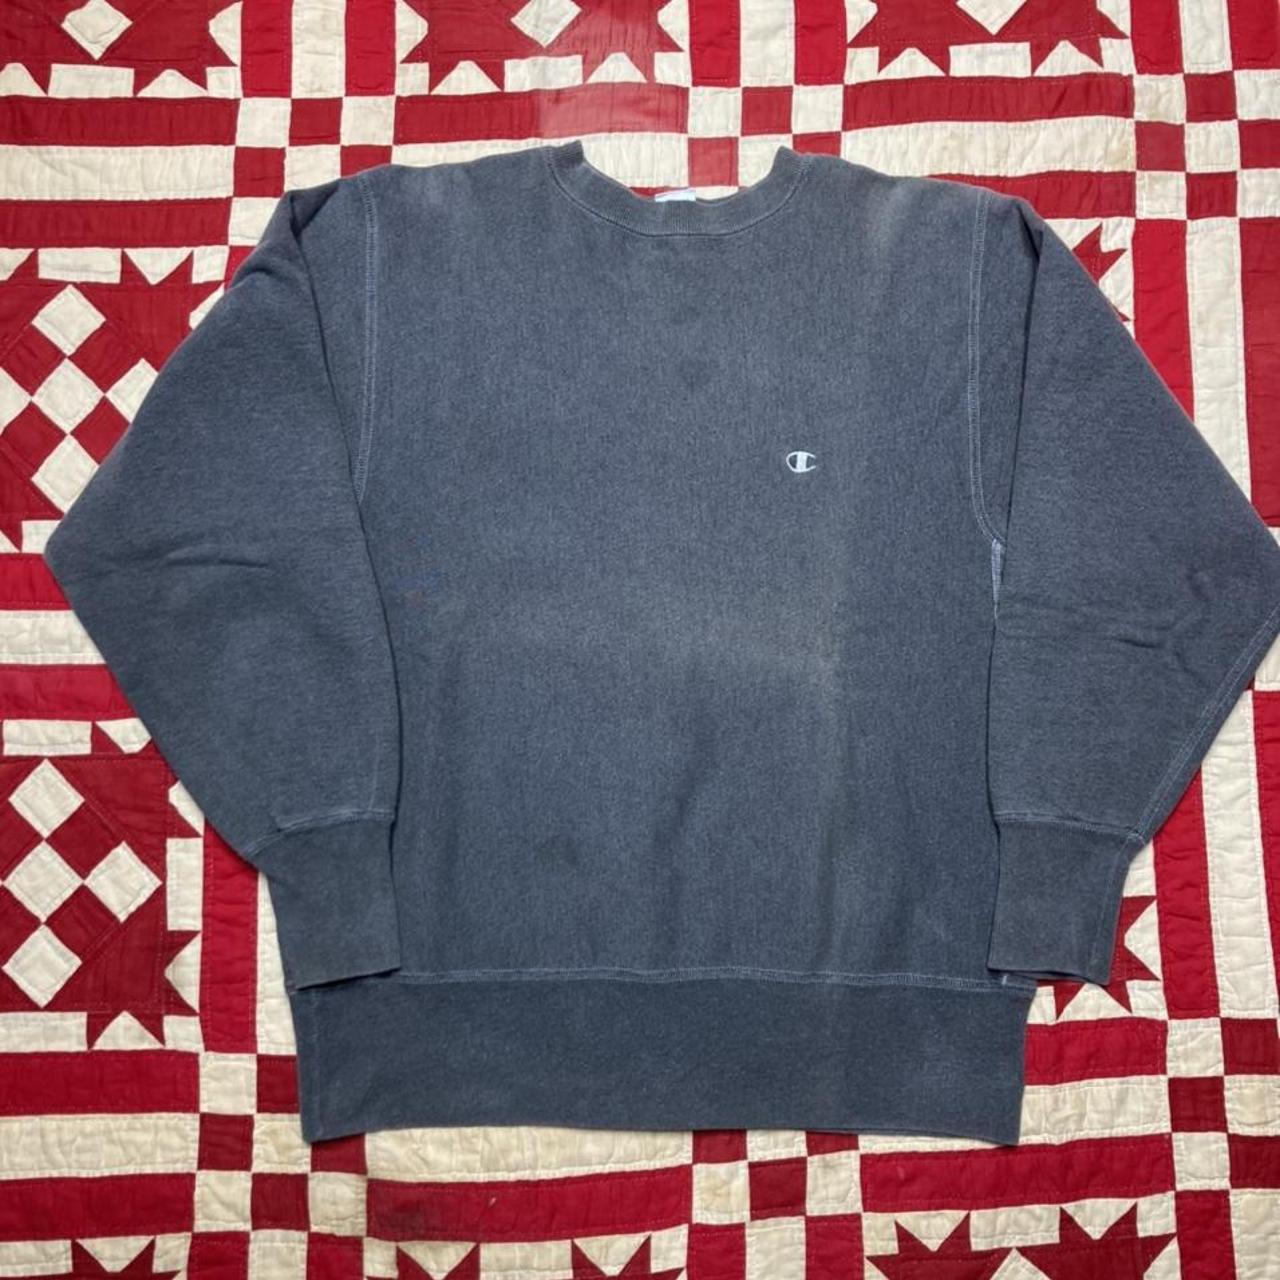 Vintage 90s reverse weave sweatshirt pullover gray... - Depop